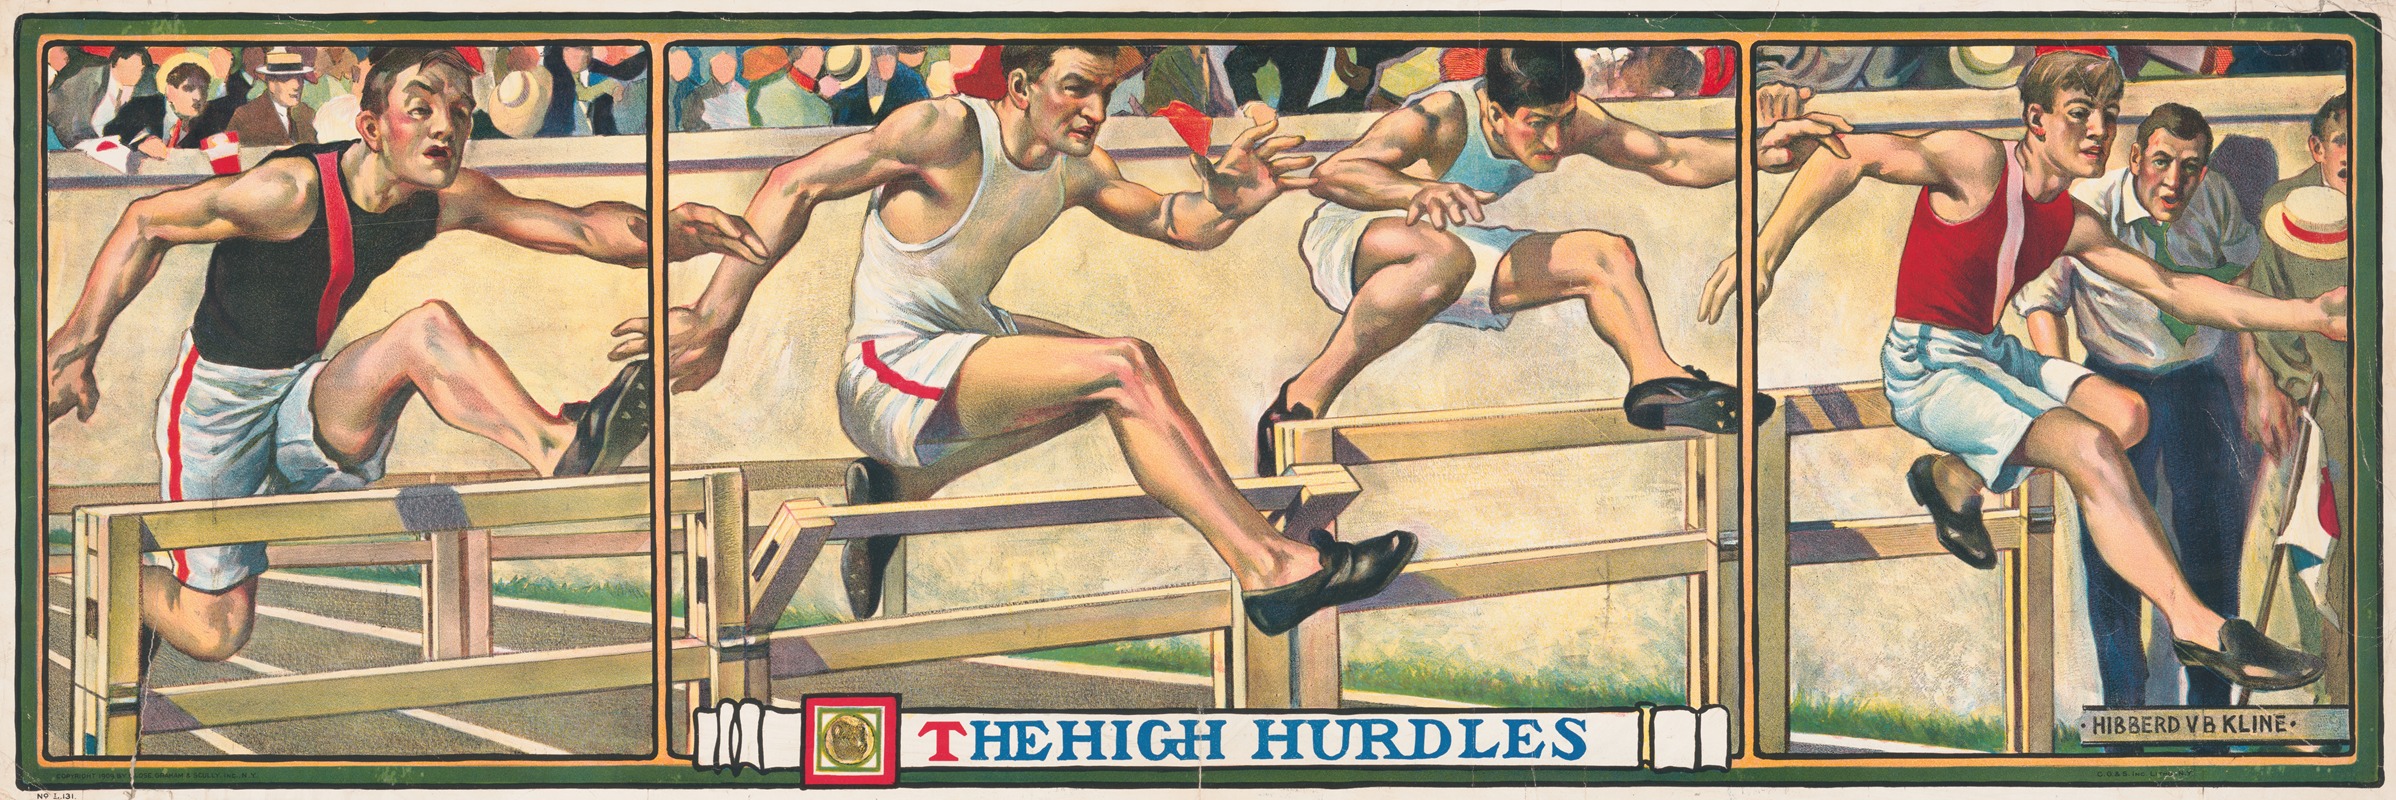 Hibberd Van Buren Kline - The high hurdles